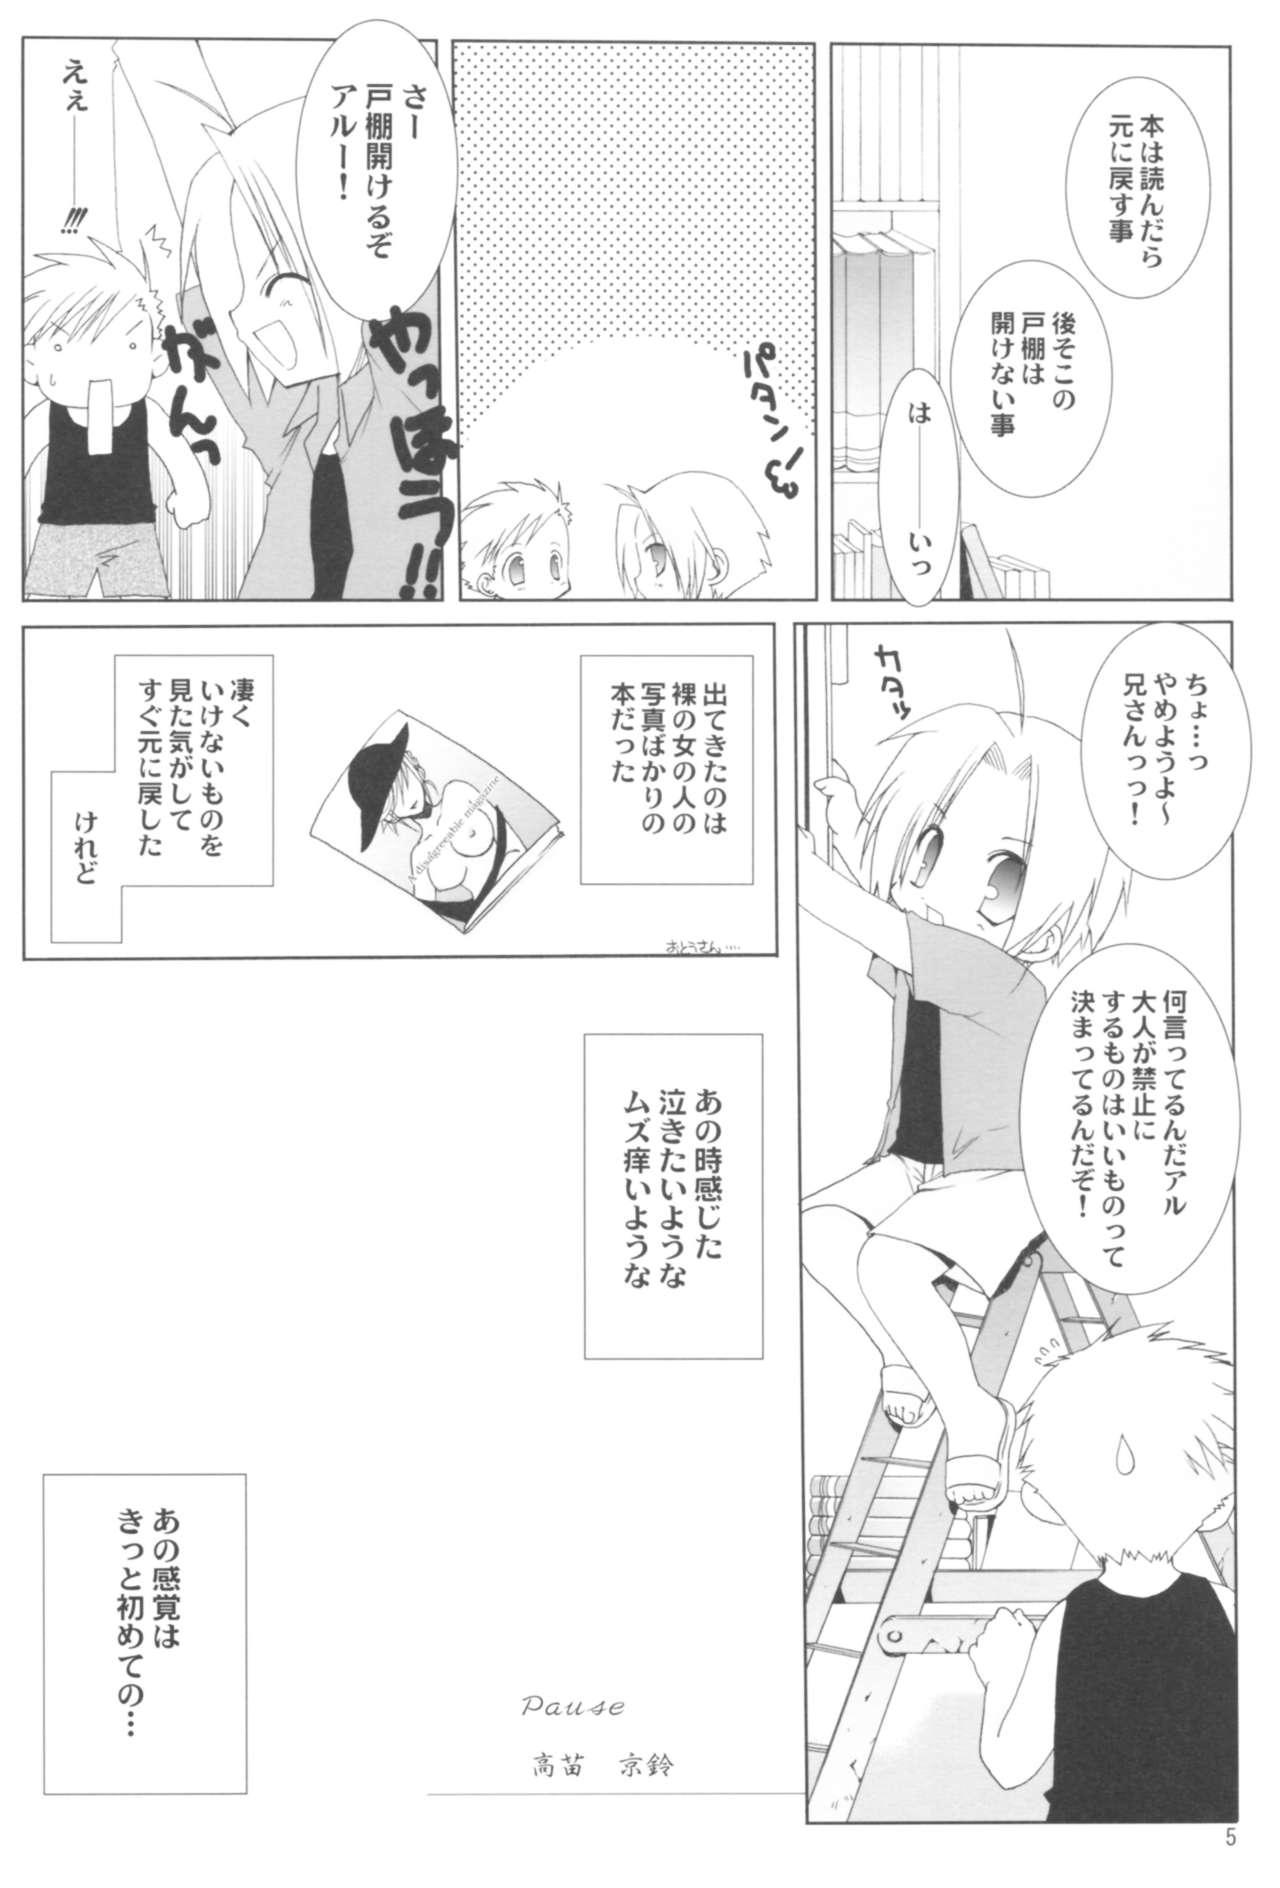 Shecock Naedoko Ikusei Kansatsu Kiroku - Bleach Fullmetal alchemist Higurashi no naku koro ni Blow Job Contest - Page 5